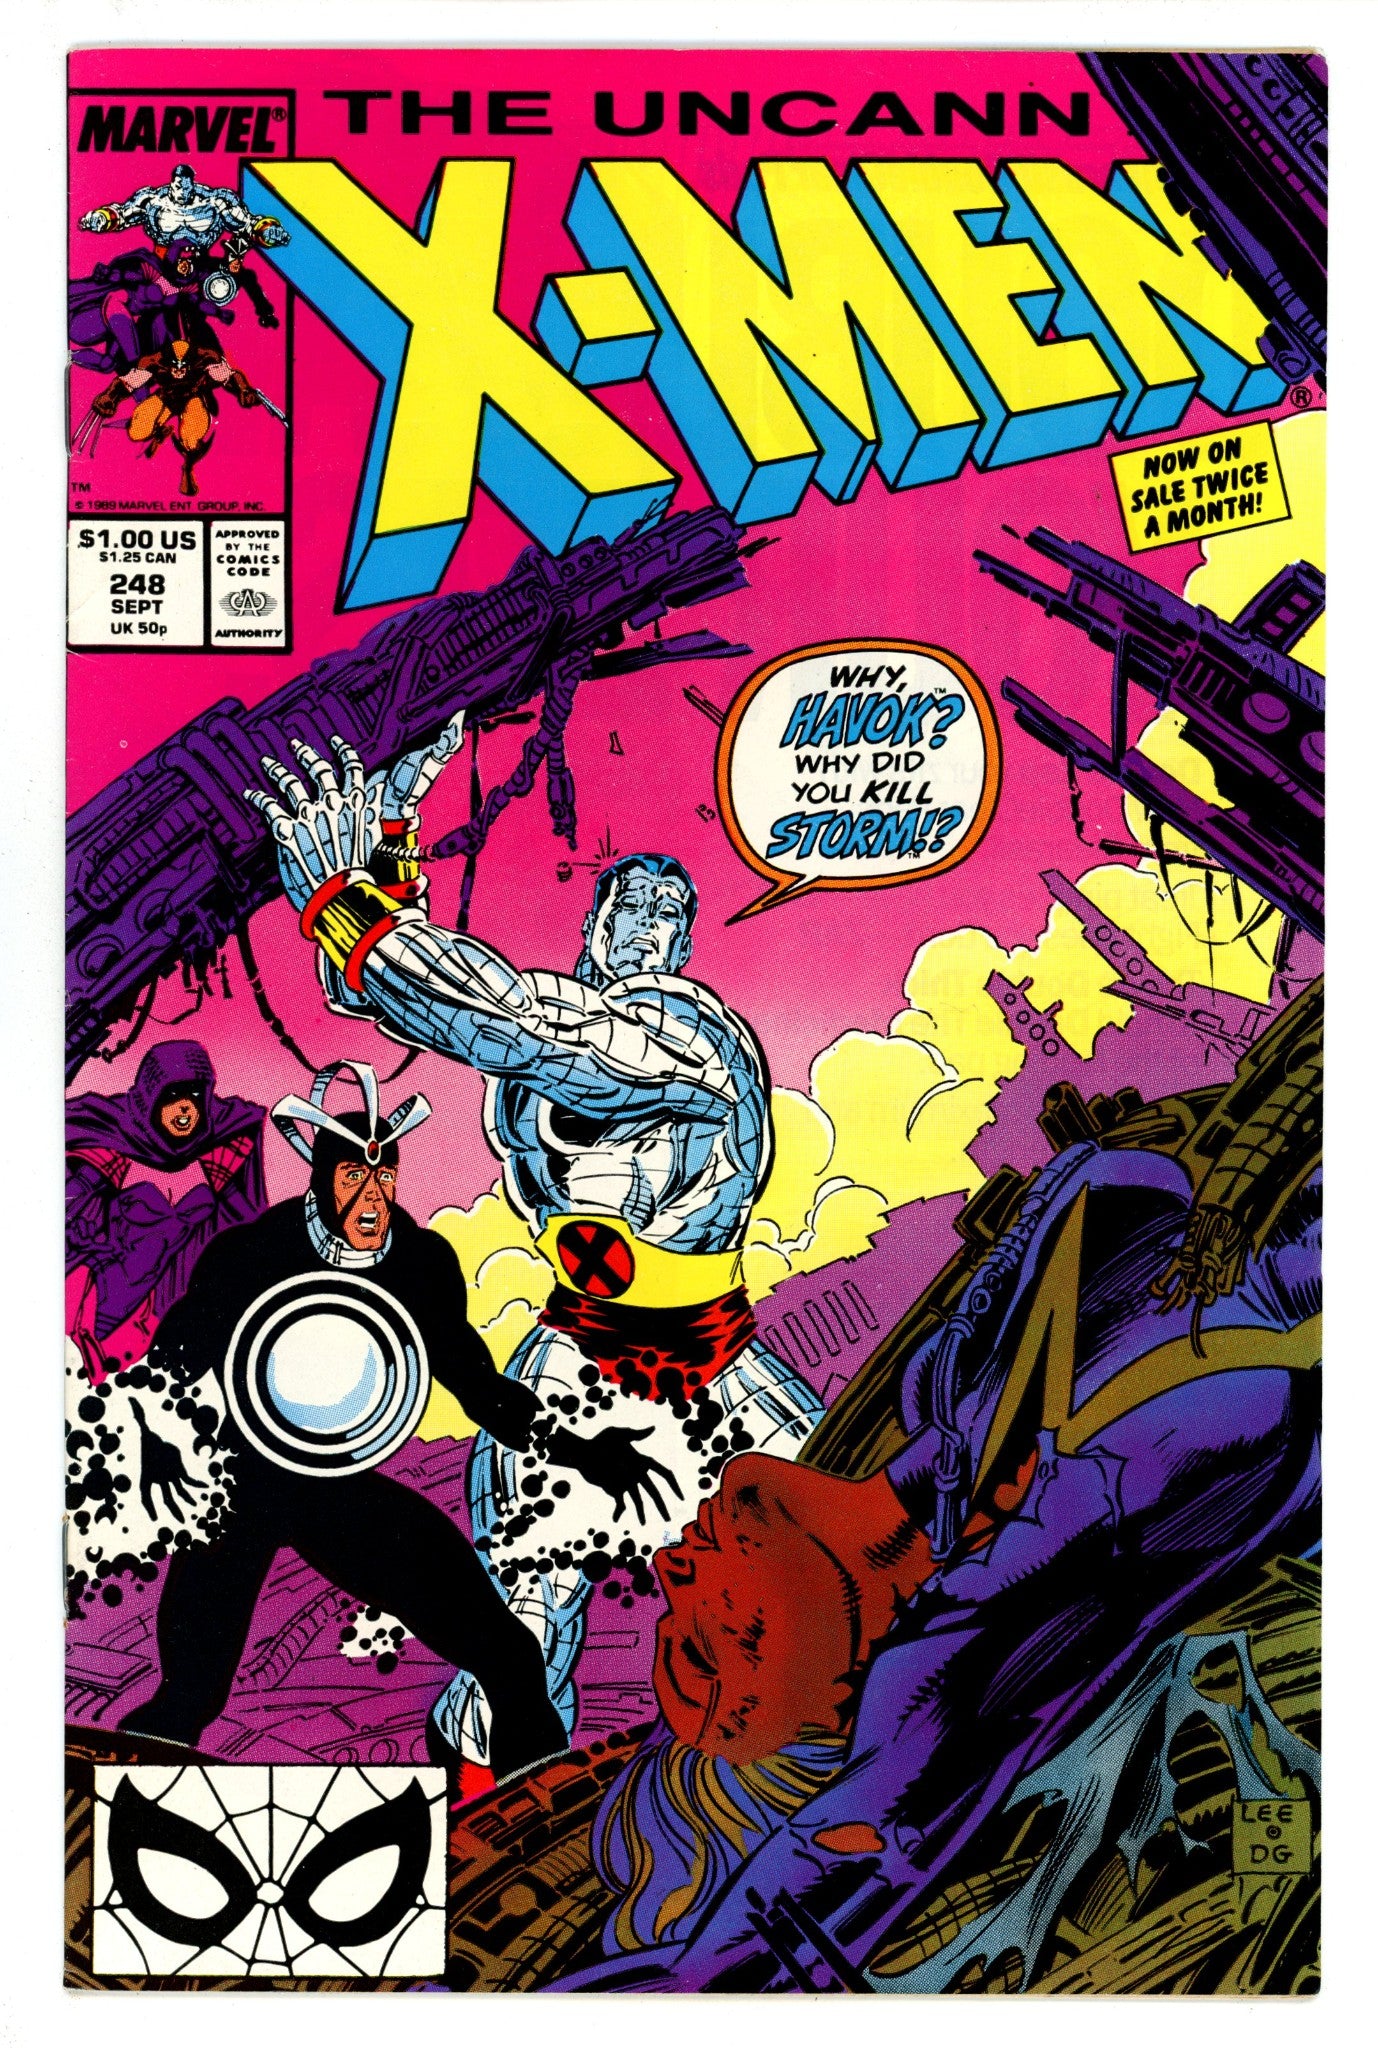 The Uncanny X-Men Vol 1 248 VF (8.0) (1989) 